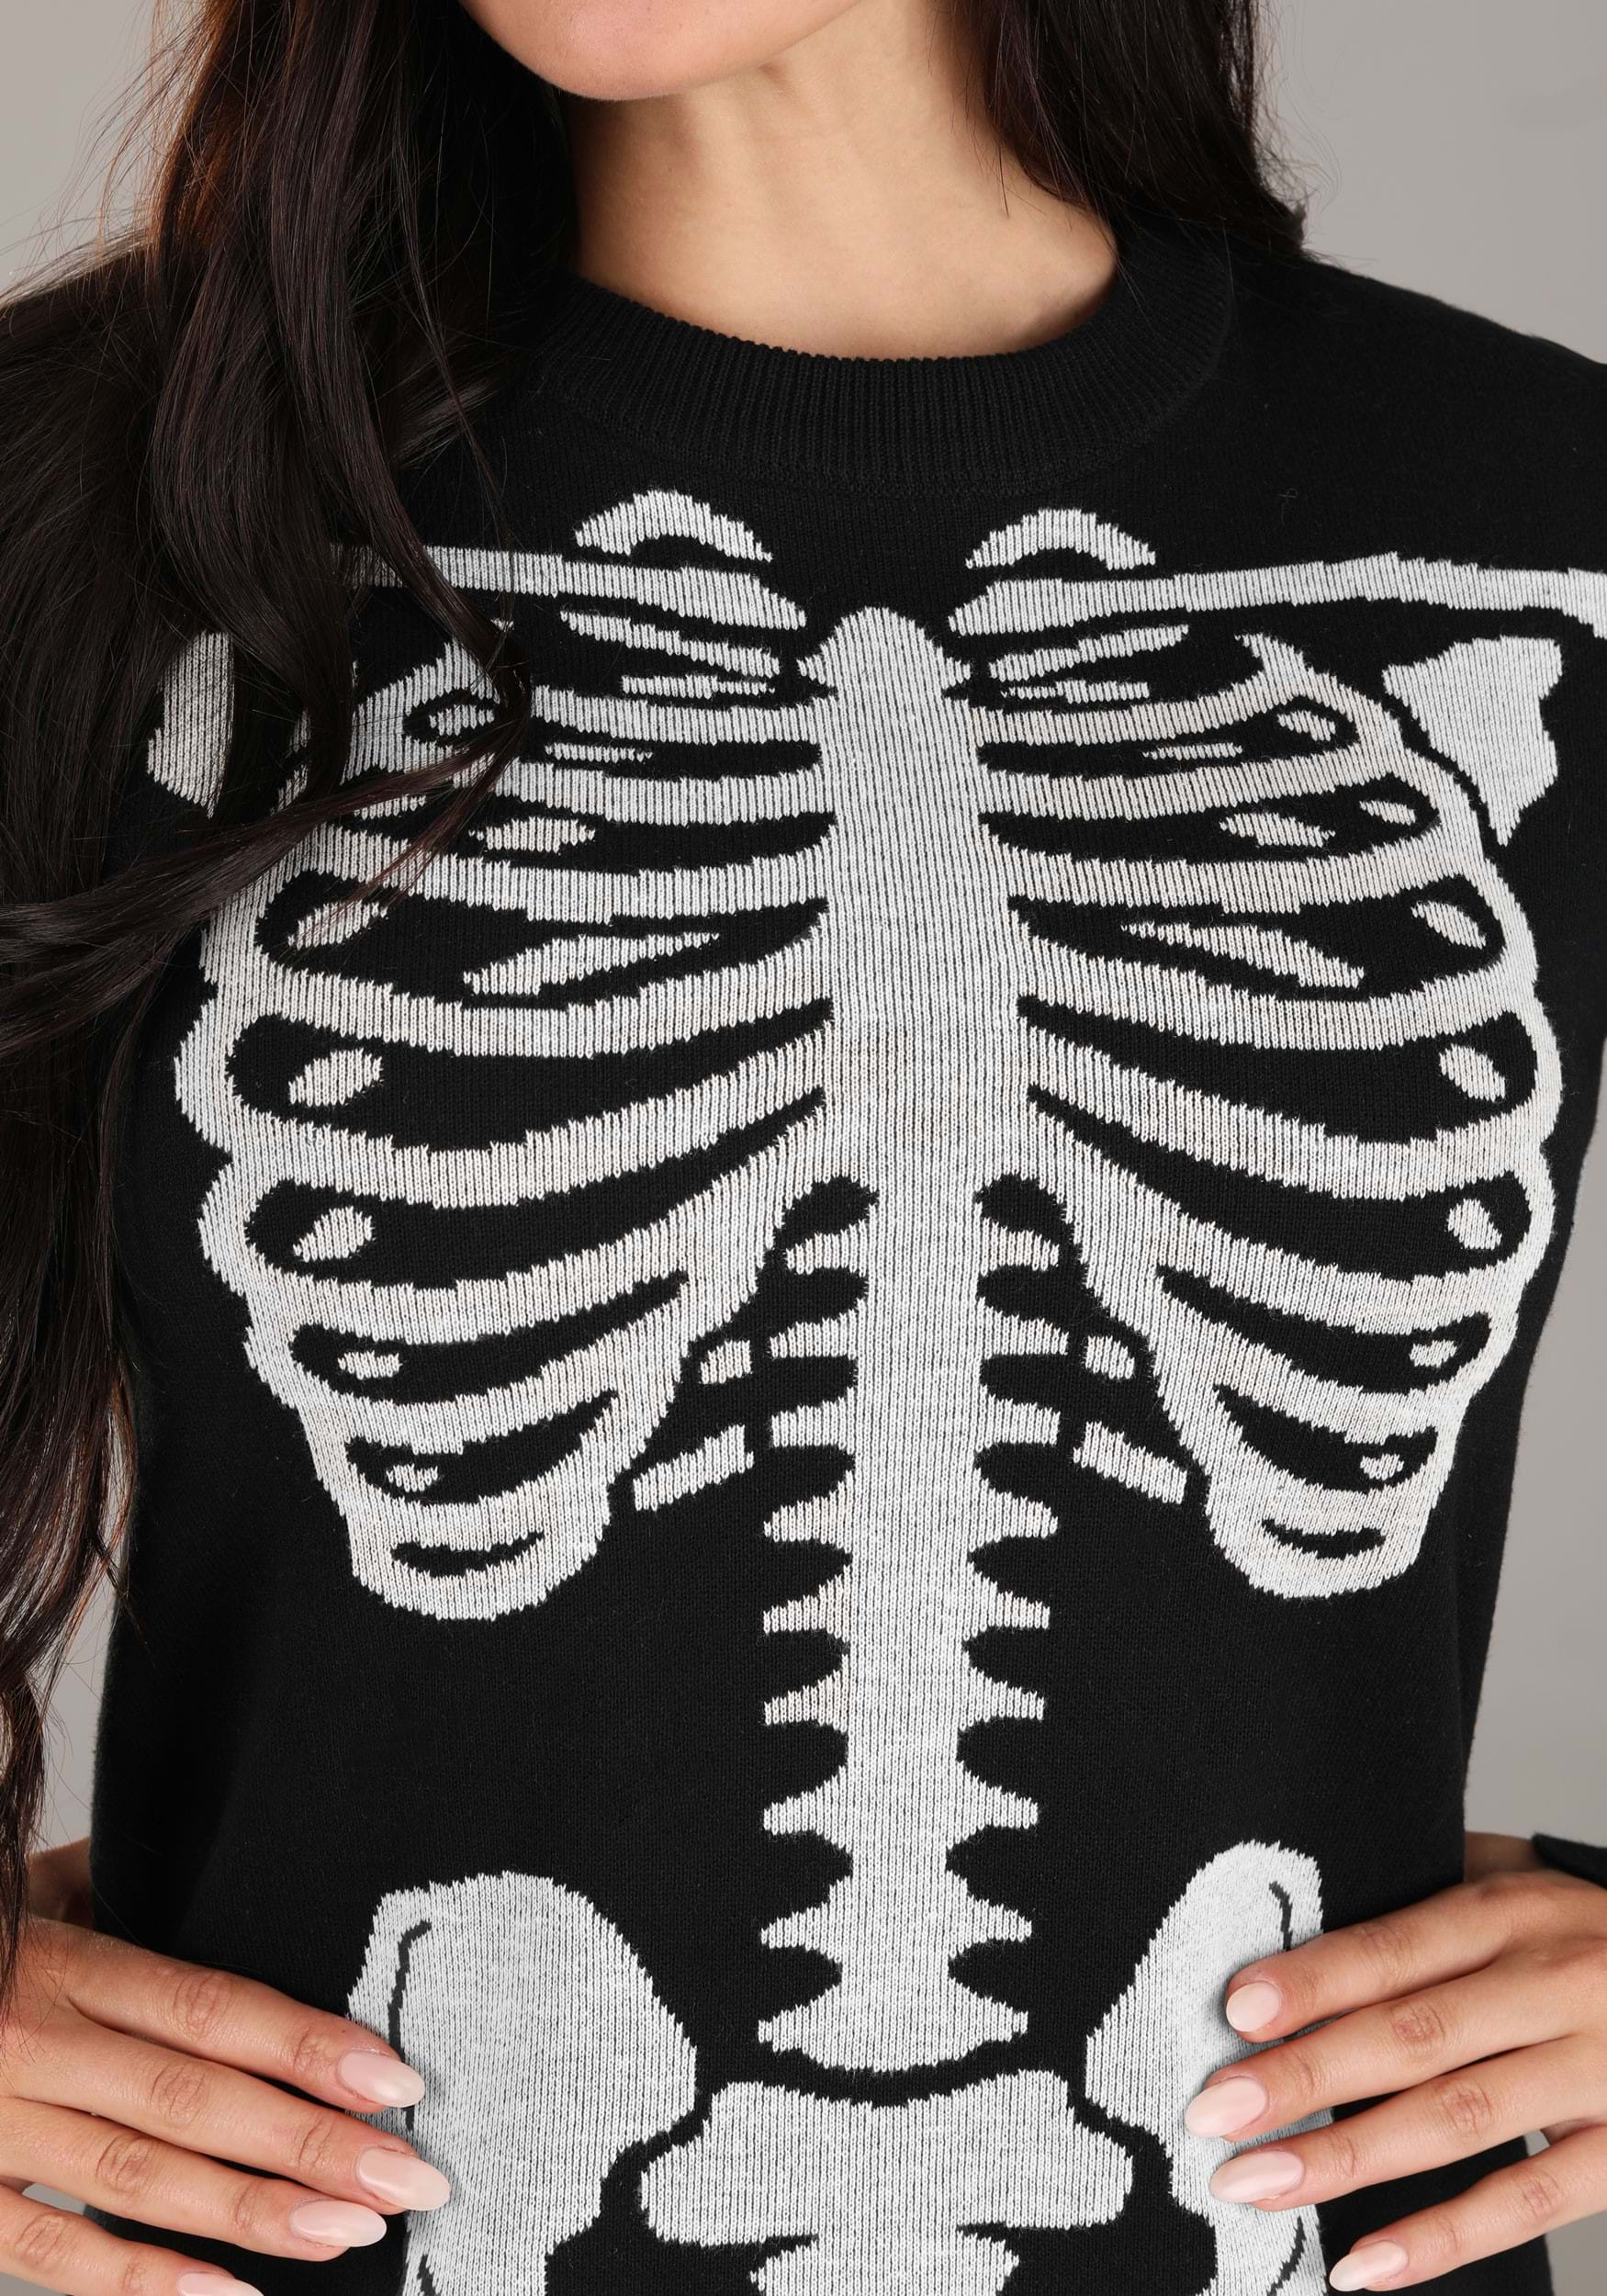 Skeleton Sweater Dress For Women